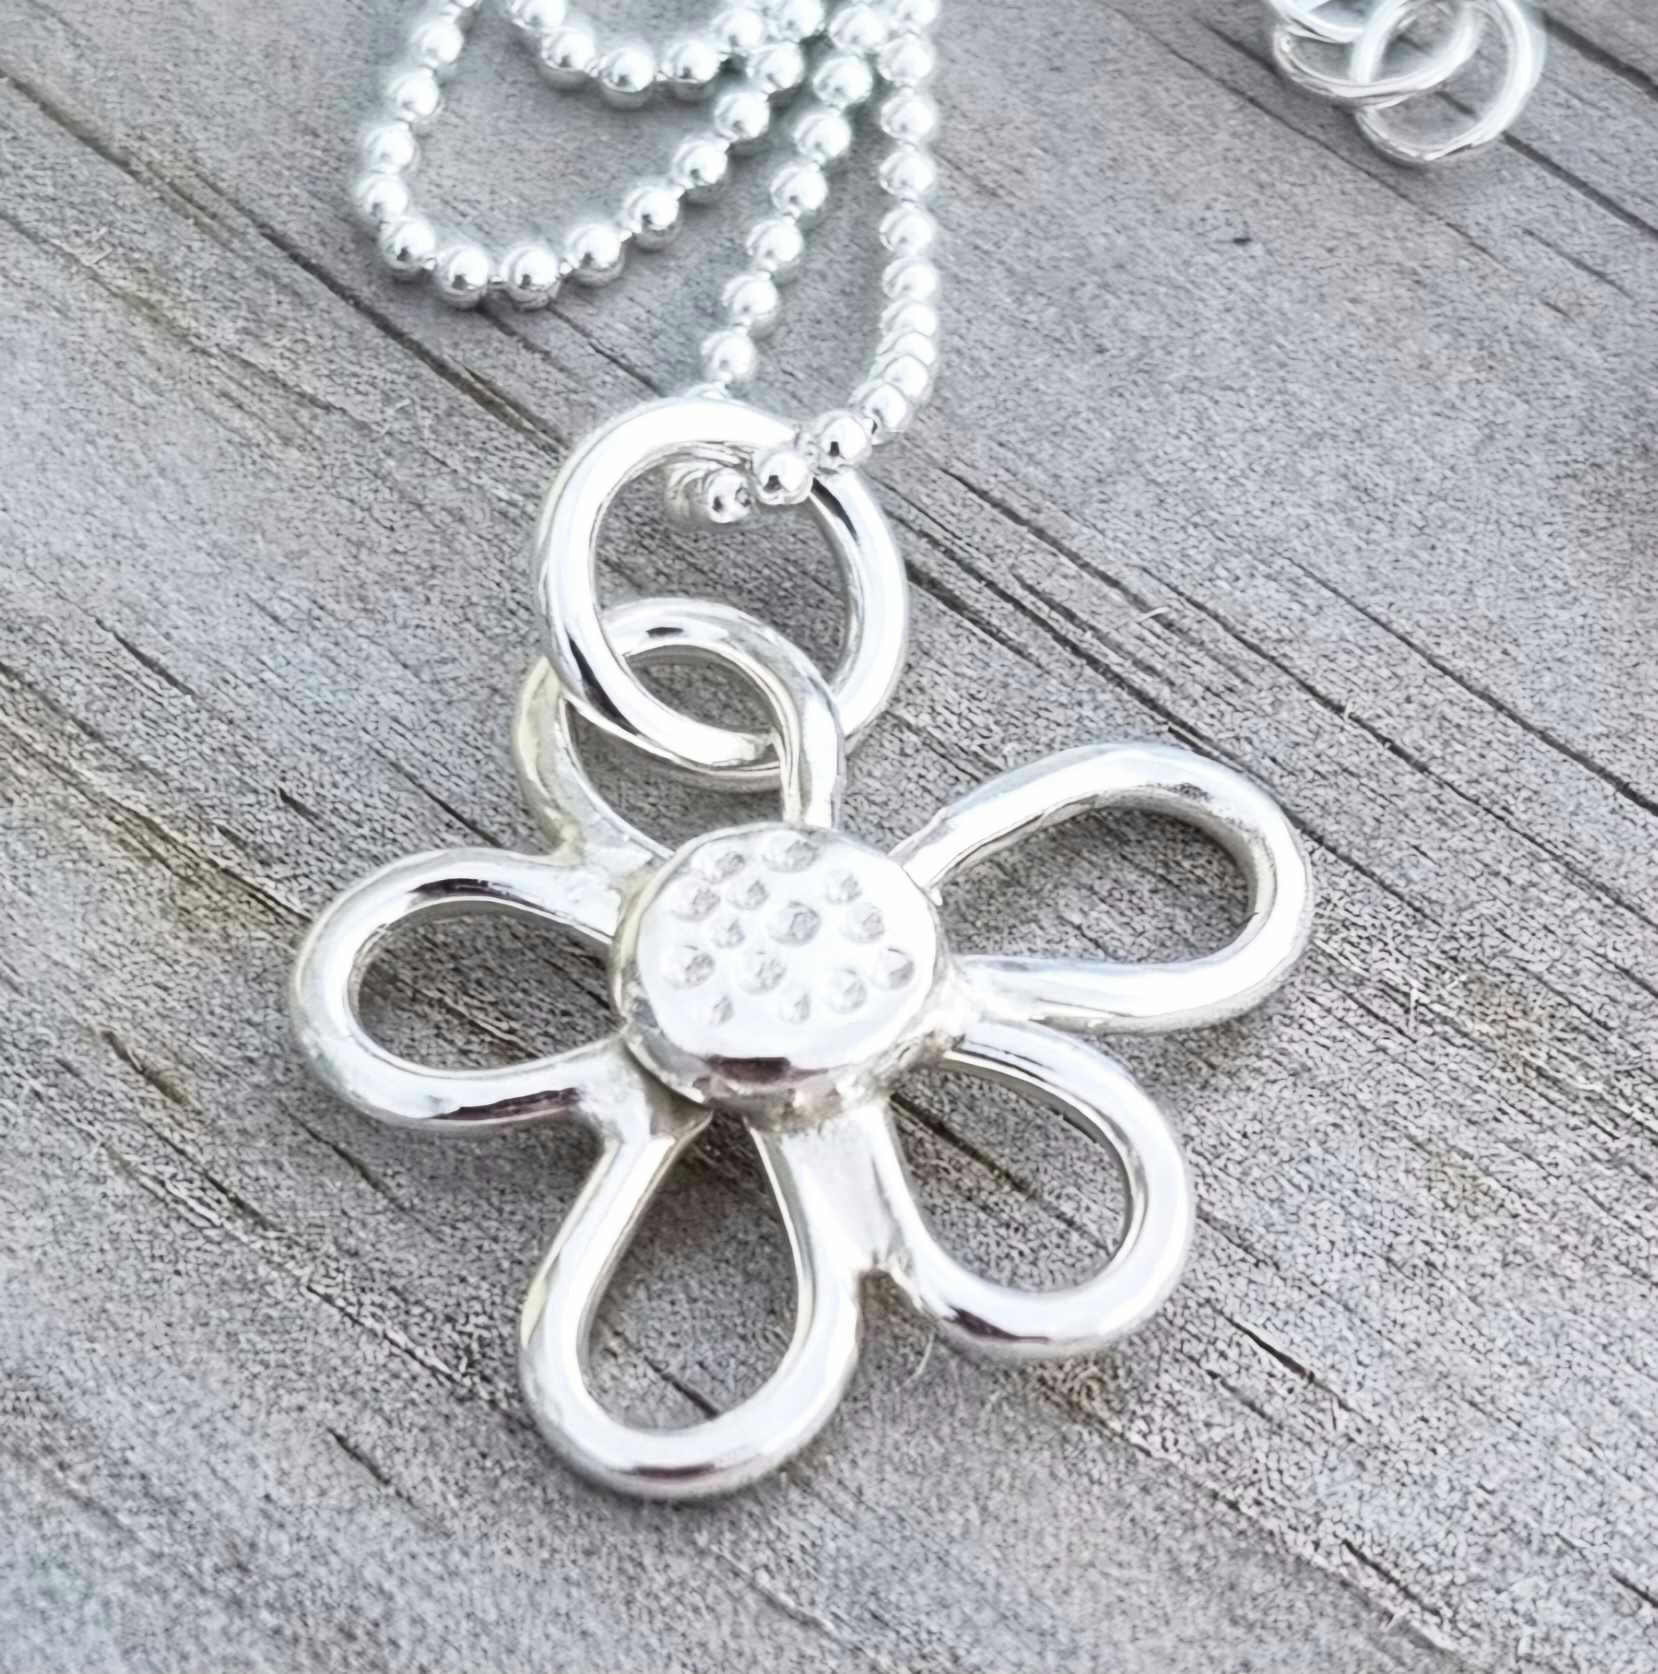 Daisy handgjord blomma i äkta silver